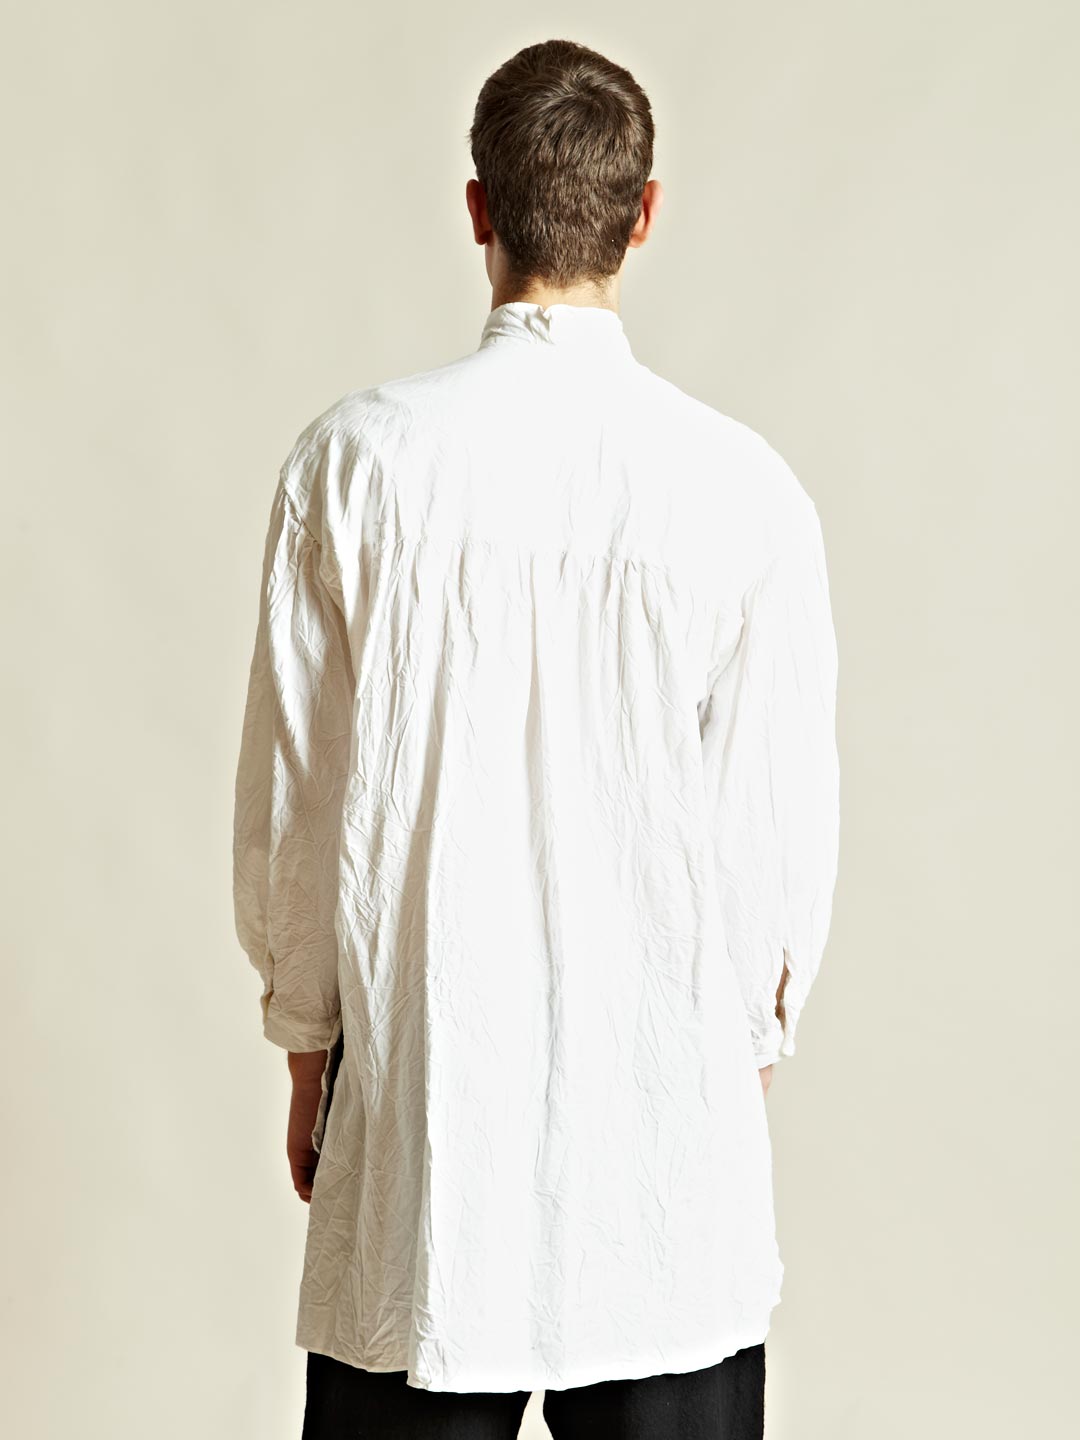 Yohji Yamamoto Gather Shrunk Shirt in White for Men - Lyst